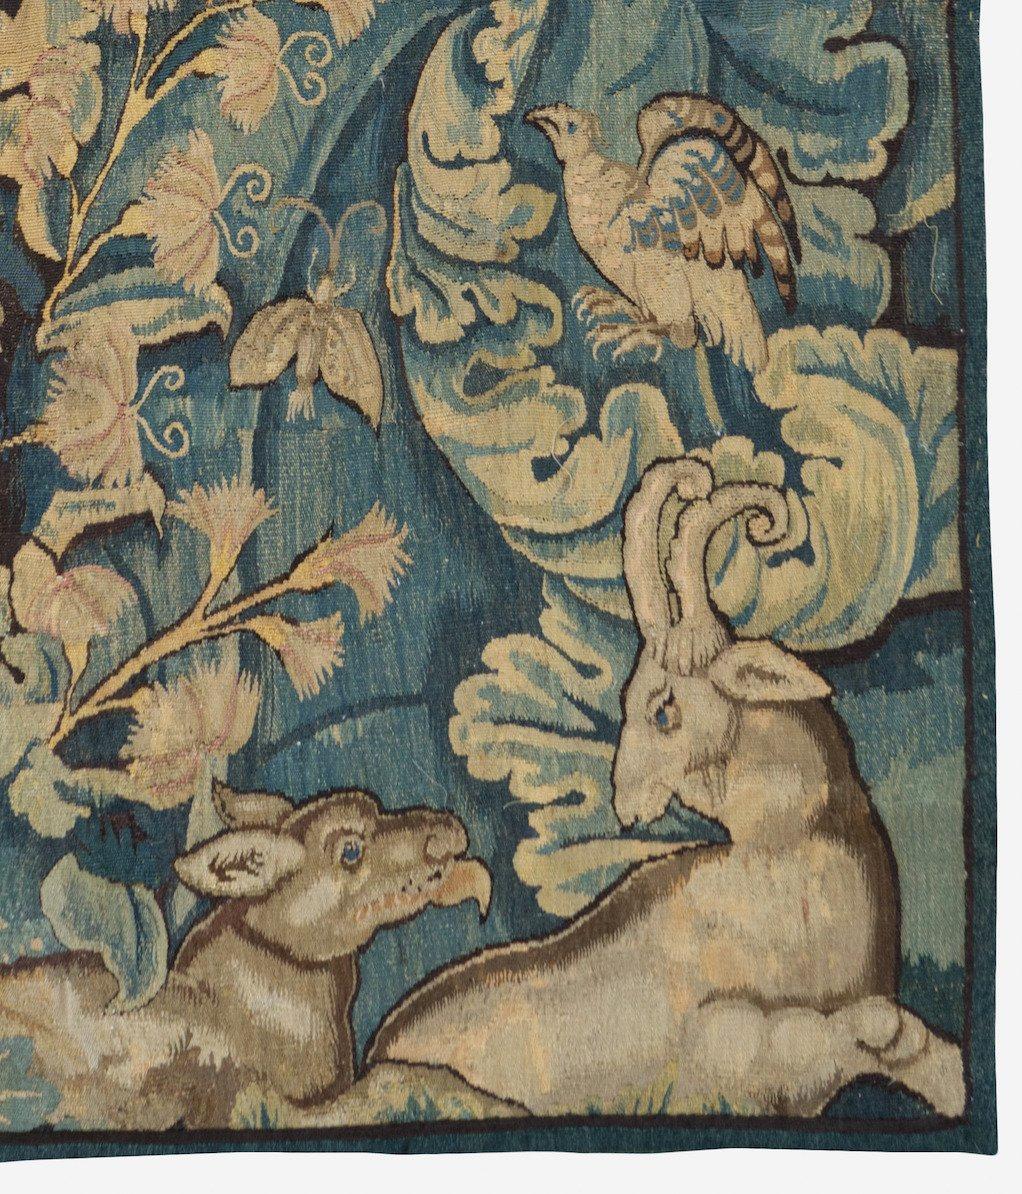 Ein seltener flämischer Wandteppich aus Verdure Feuilles de Choux aus dem 16. 

Feuilles de Choux (Kohlblätter) sind große Blätter in einem allgemeinen, oft wilden Motiv mit Tieren der Jagd oder exotischen Kreaturen, die wegen ihrer Schönheit und